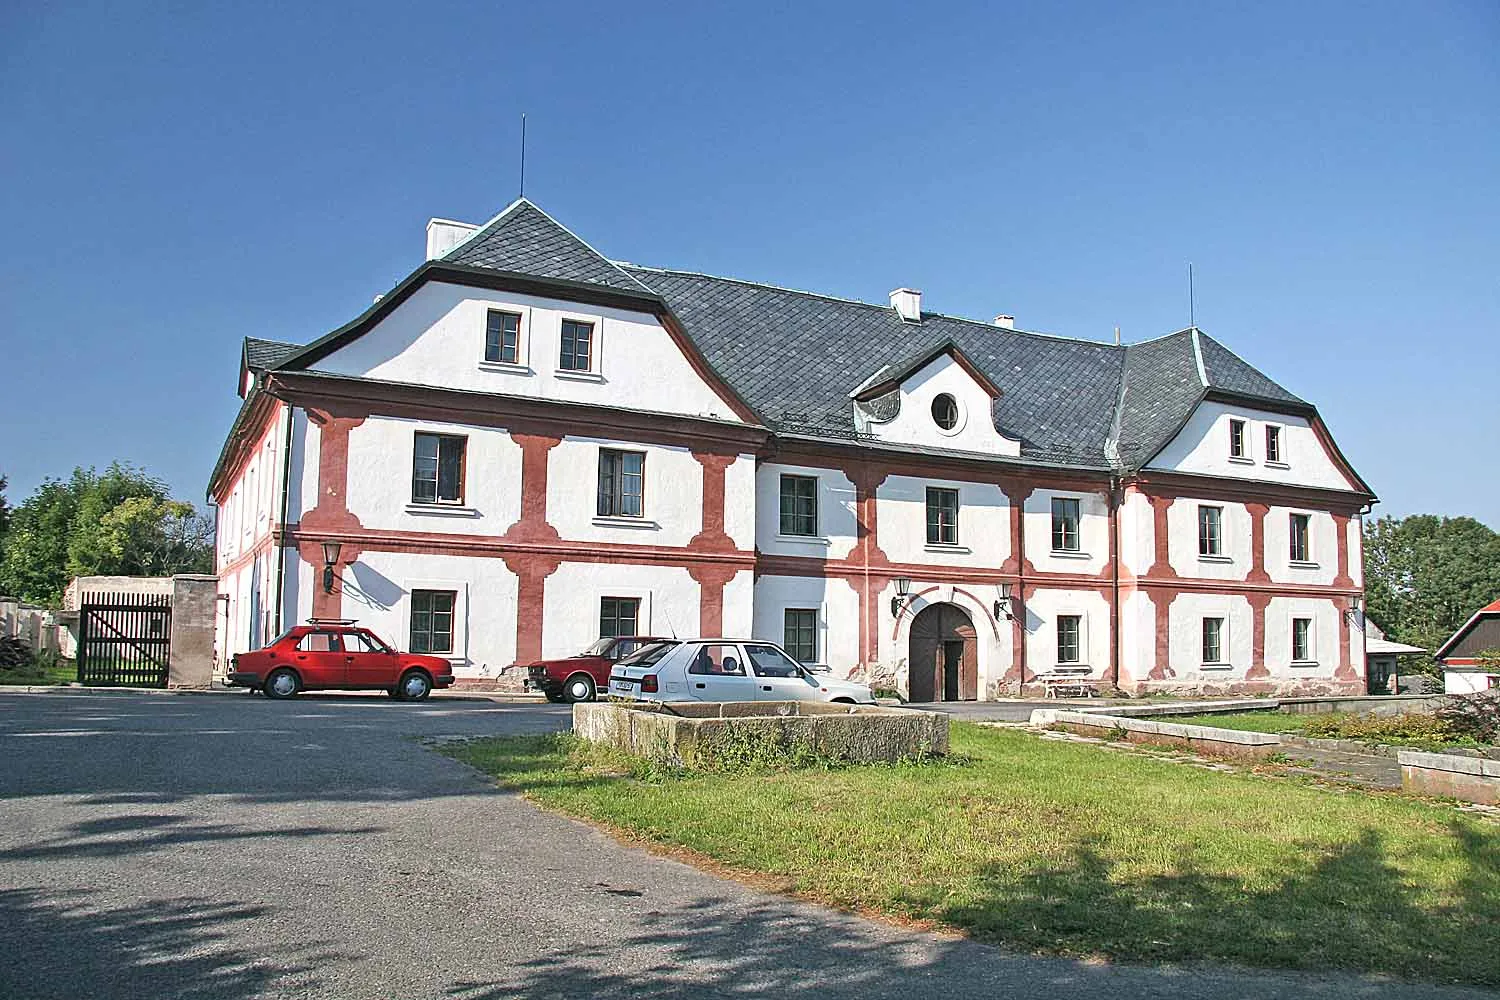 Photo showing: Budova Panského dvora v obci Předhradí, Chrudim district, Czech Republic
autor: Prazak

Date: 14. 9. 2006